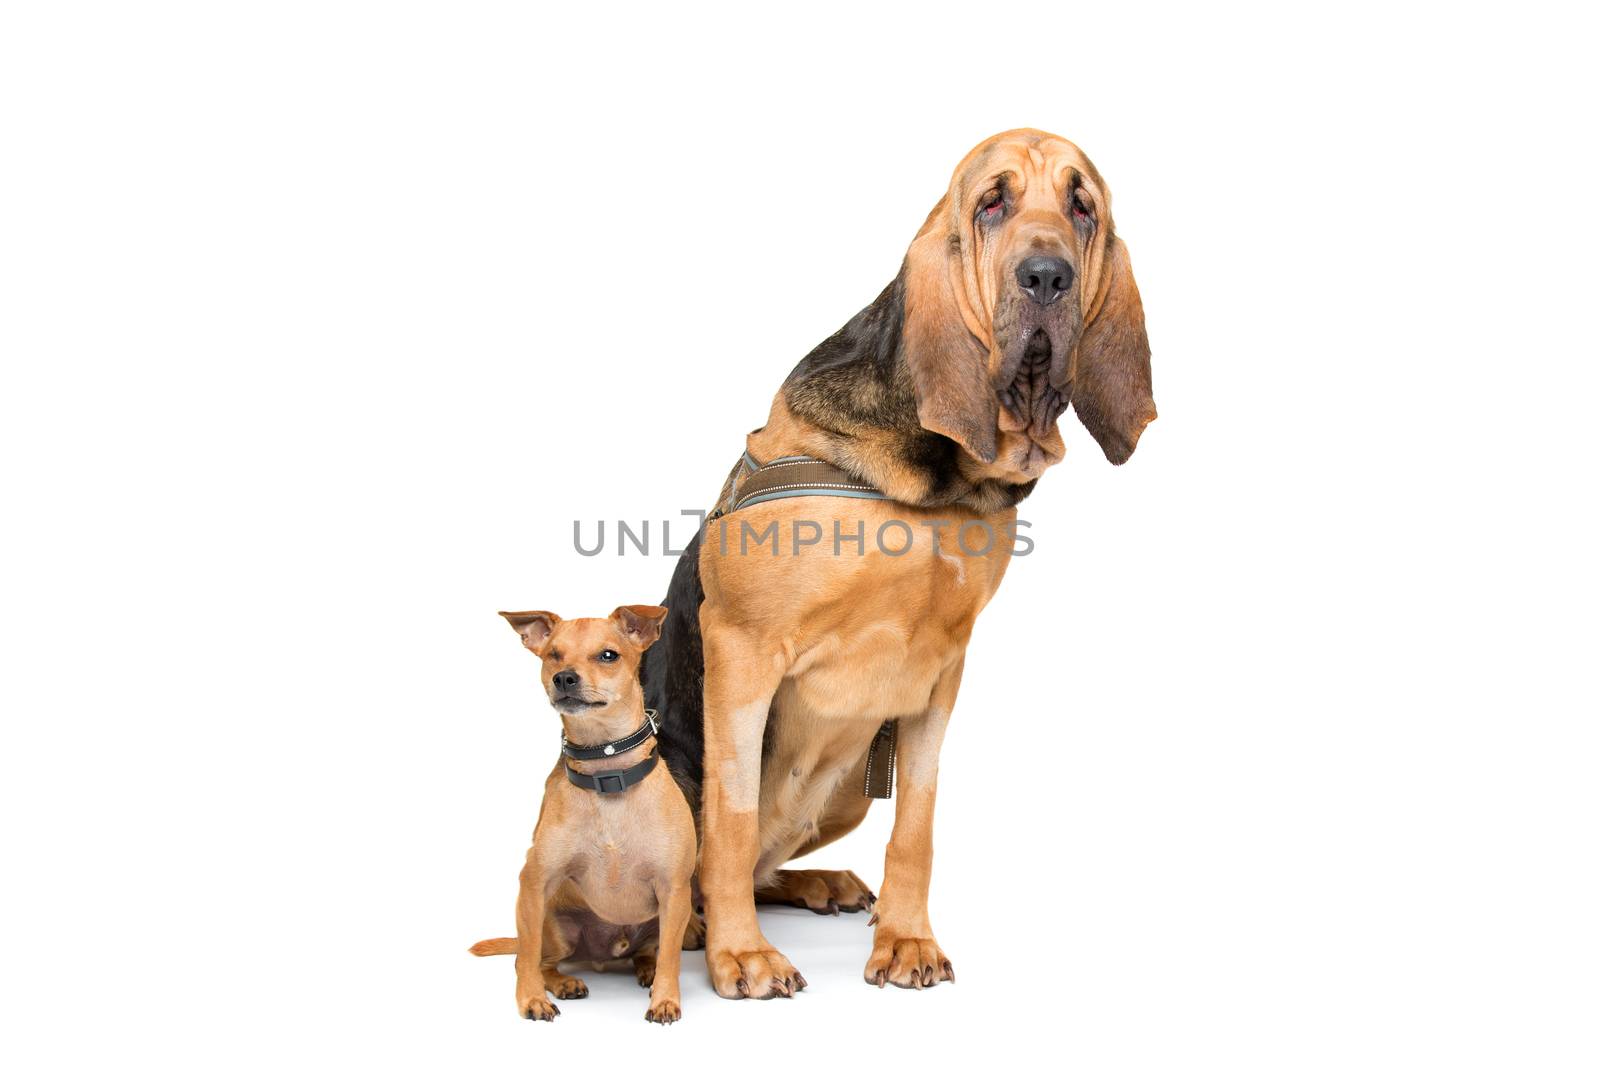 Miniature Pinscher and a bloodhound by eriklam